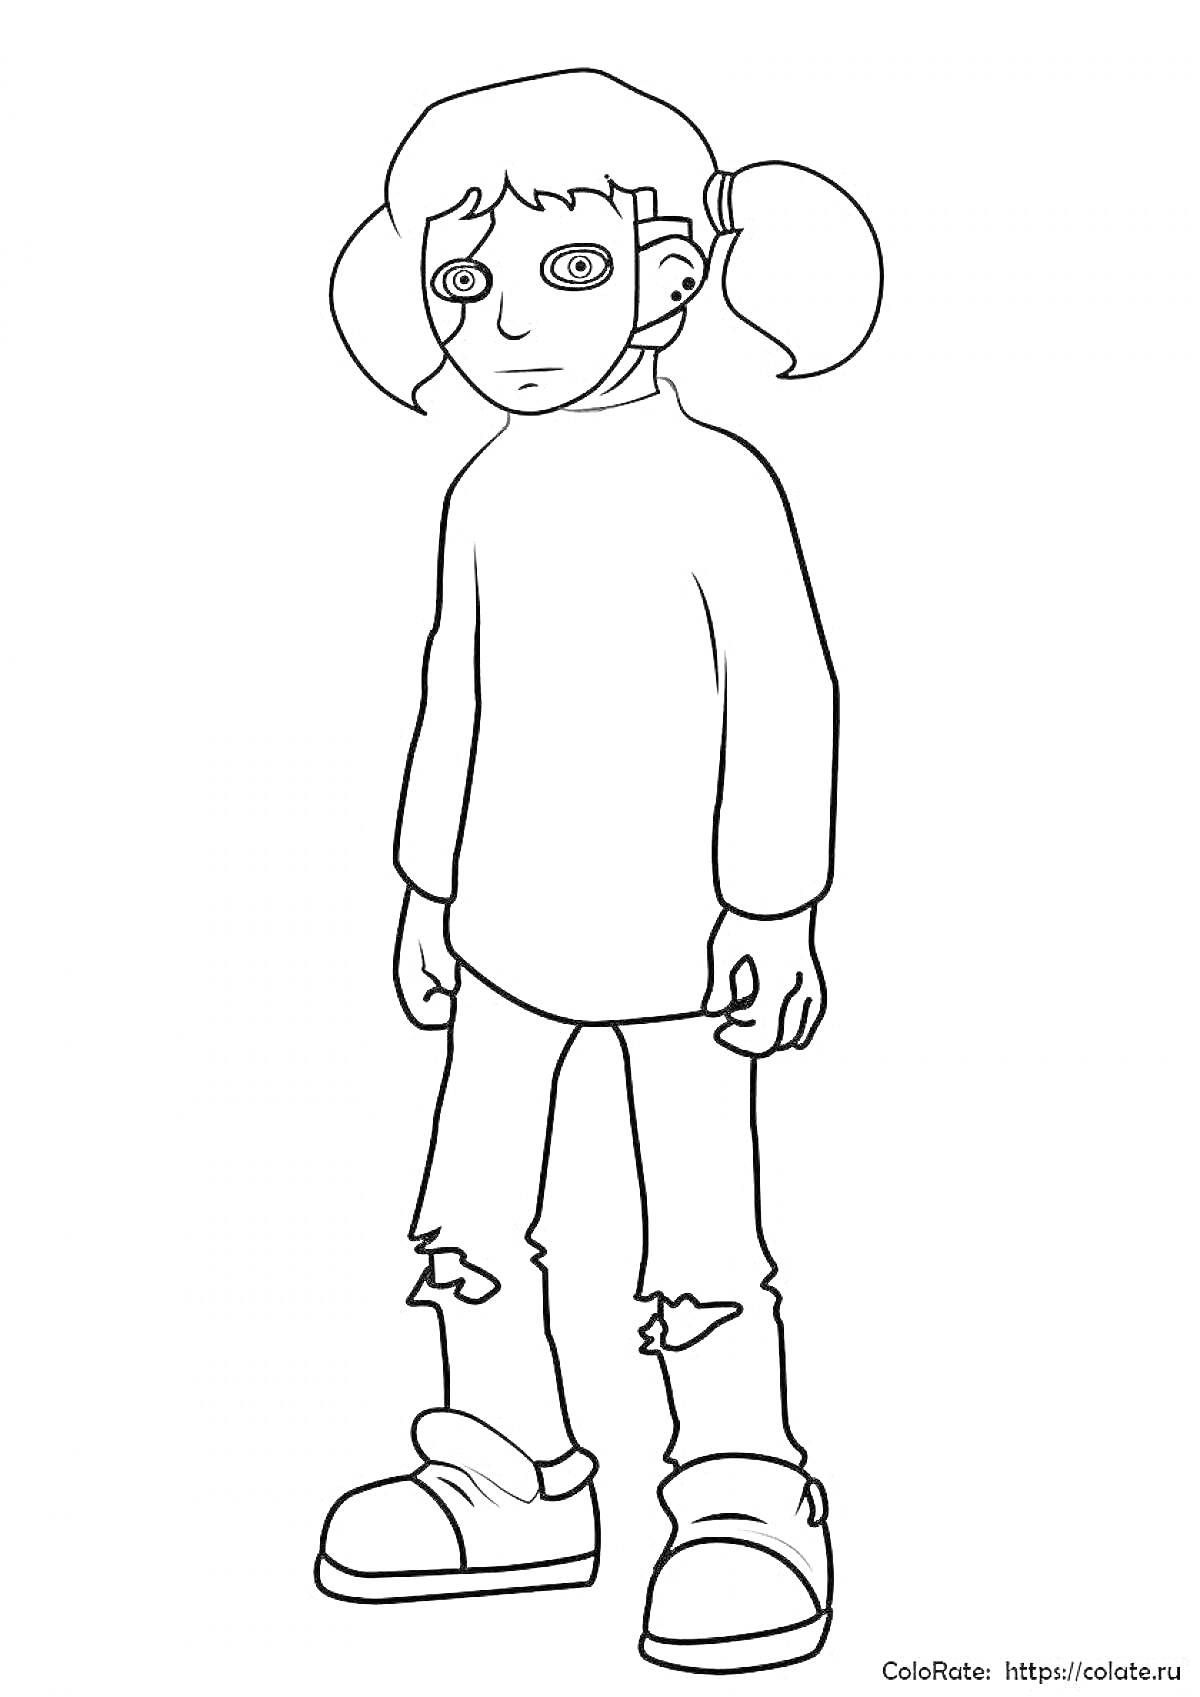 Раскраска Рисунок Салли Фейс в маске, с двумя хвостиками, в свитере и порванных джинсах, в кроссовках